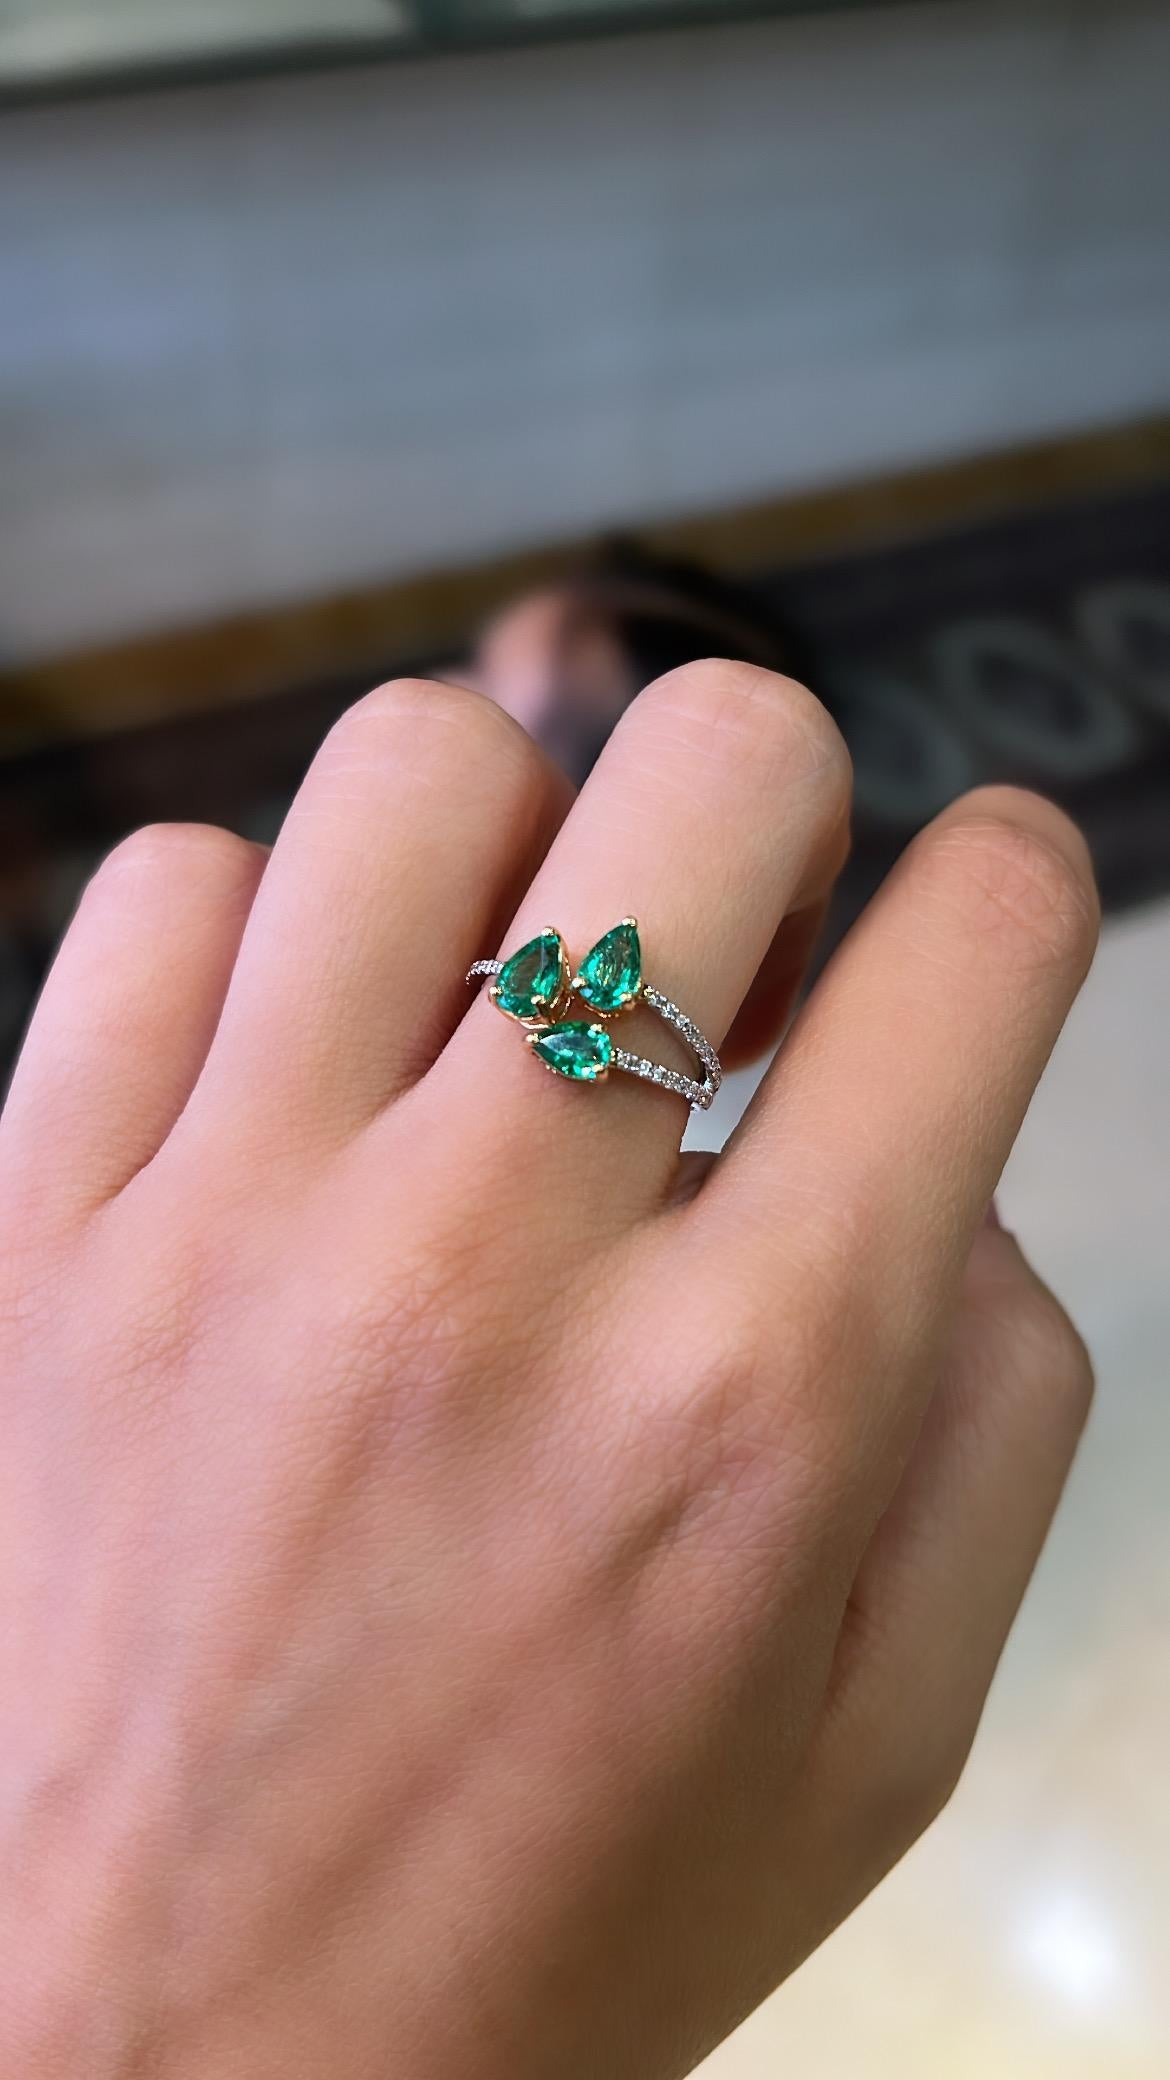 Ein sehr zierlicher und schöner Smaragd-Cocktail/Dreistein-Ring in 18K Gold & Diamanten. Das Gewicht der Smaragde beträgt 1,04 Karat. Die Smaragde sind völlig natürlich, ohne jegliche Behandlung und sind sambischen Ursprungs. Das Gewicht der